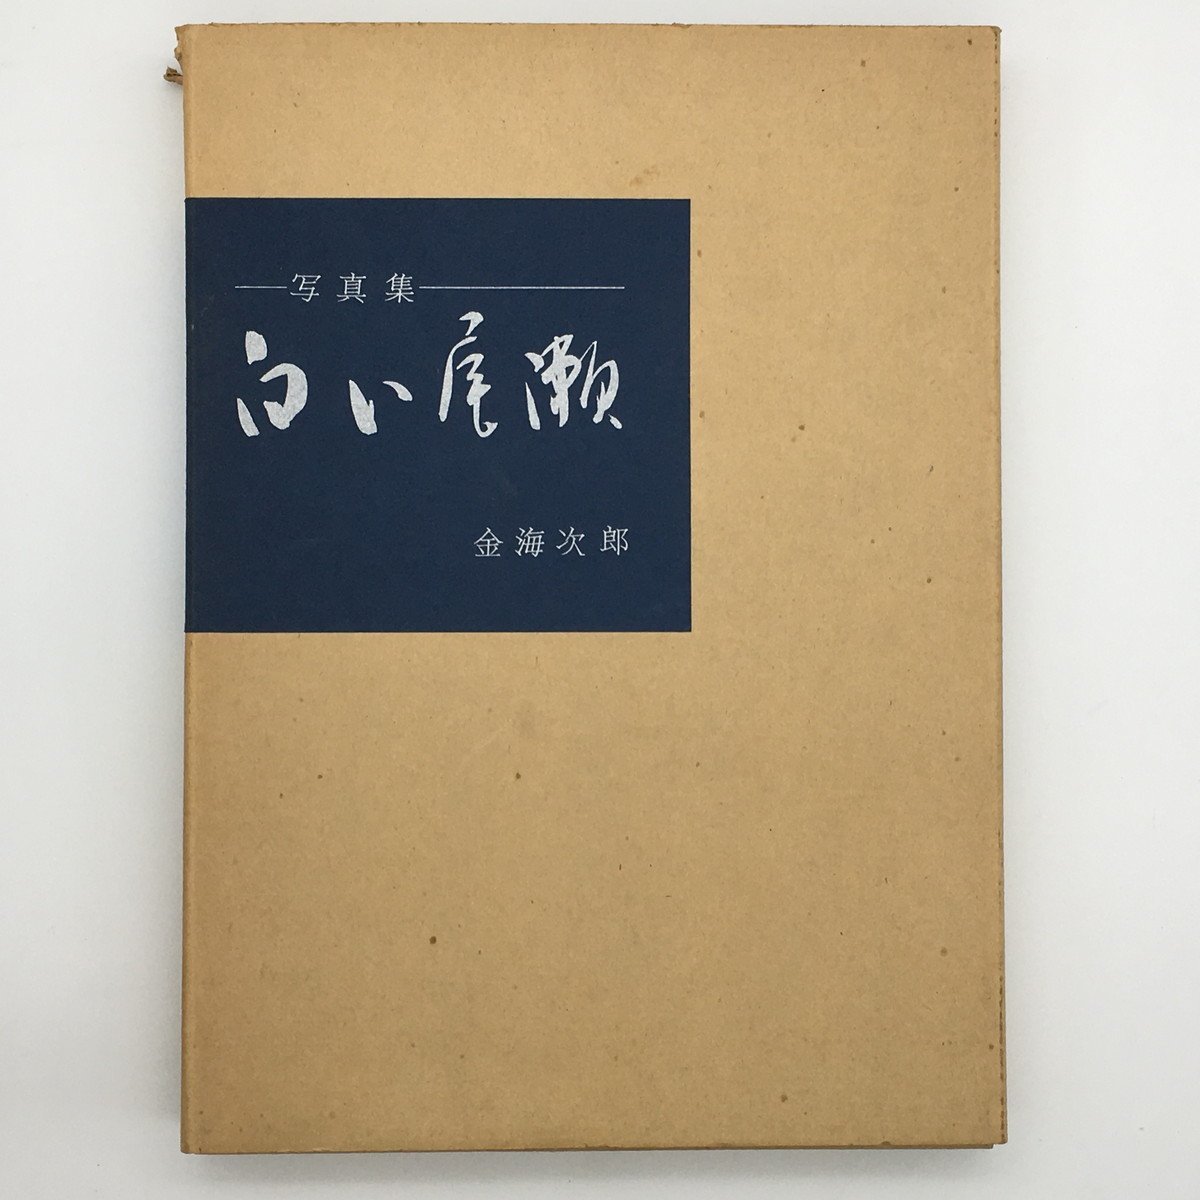 Fotosammlung: White Oze mit 6 Originaldrucken, signiert von Jiro Kanaumi, limitiert auf 100 Exemplare, Sonderausgabe, Kunst, Unterhaltung, Fotoalbum, Natur, Landschaft